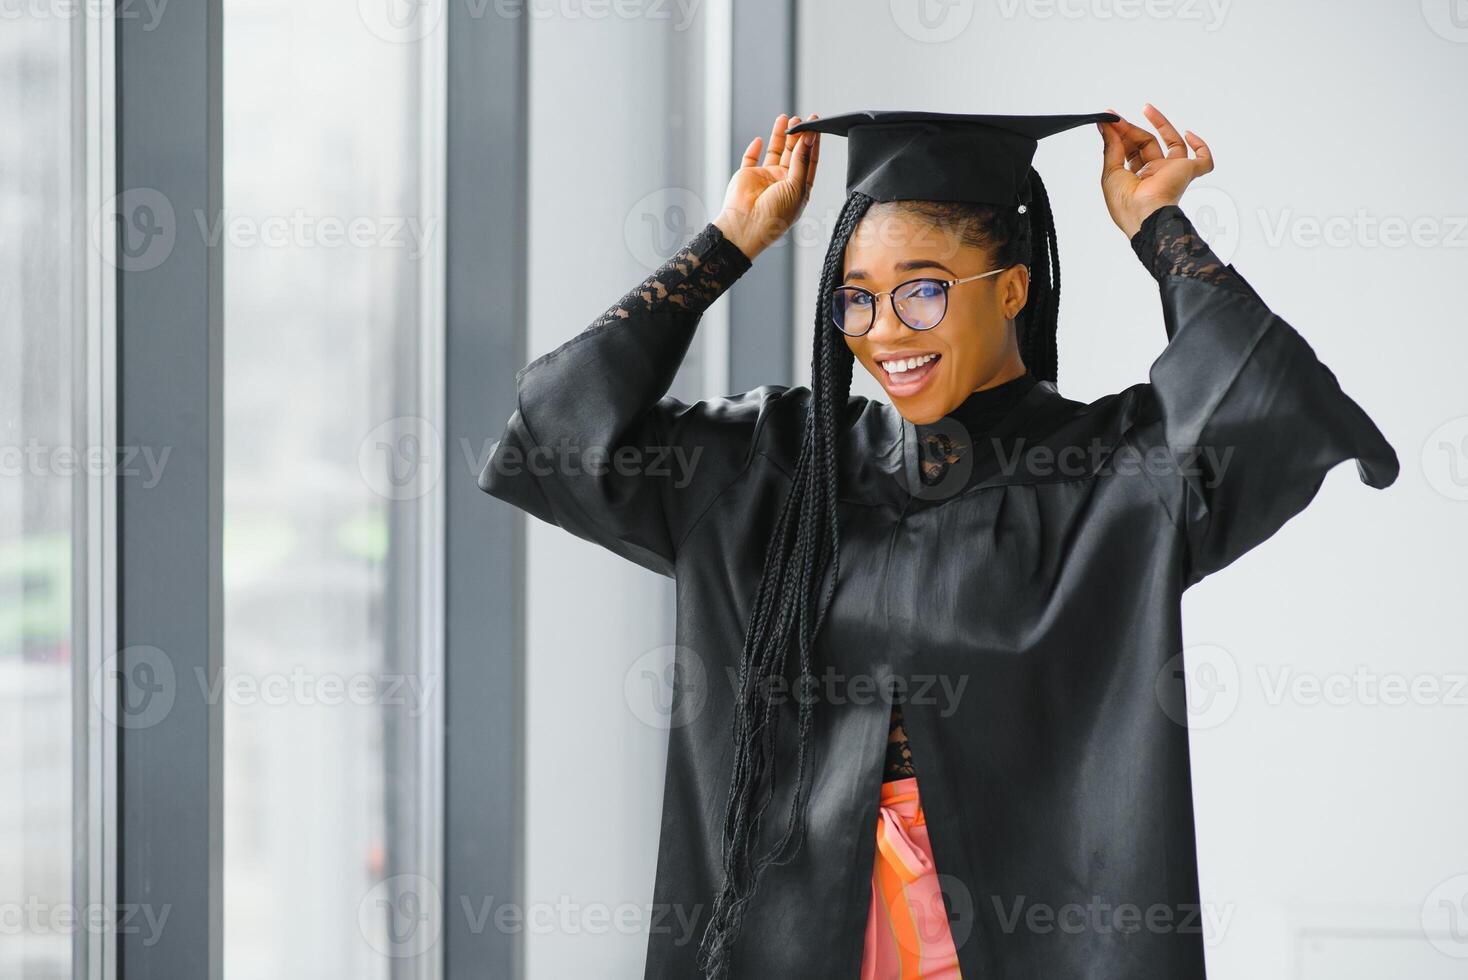 bonito africano hembra Universidad graduado a graduación foto